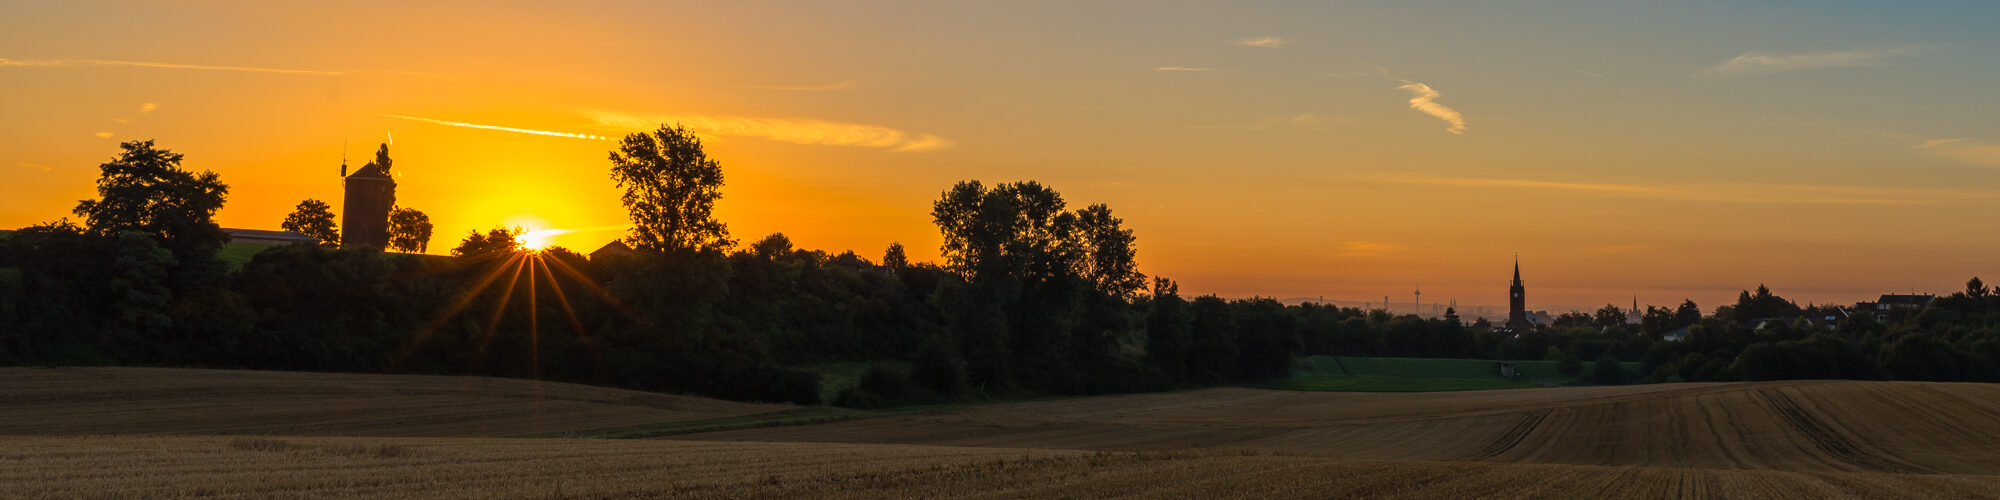 Sonnenaufgang über einem abgeernteten Getreidefeld, links die Sonne neben einer alten Mühle, rechts am Horizont winzig die Kölner Skyline mit Colonius und Kölner Dom